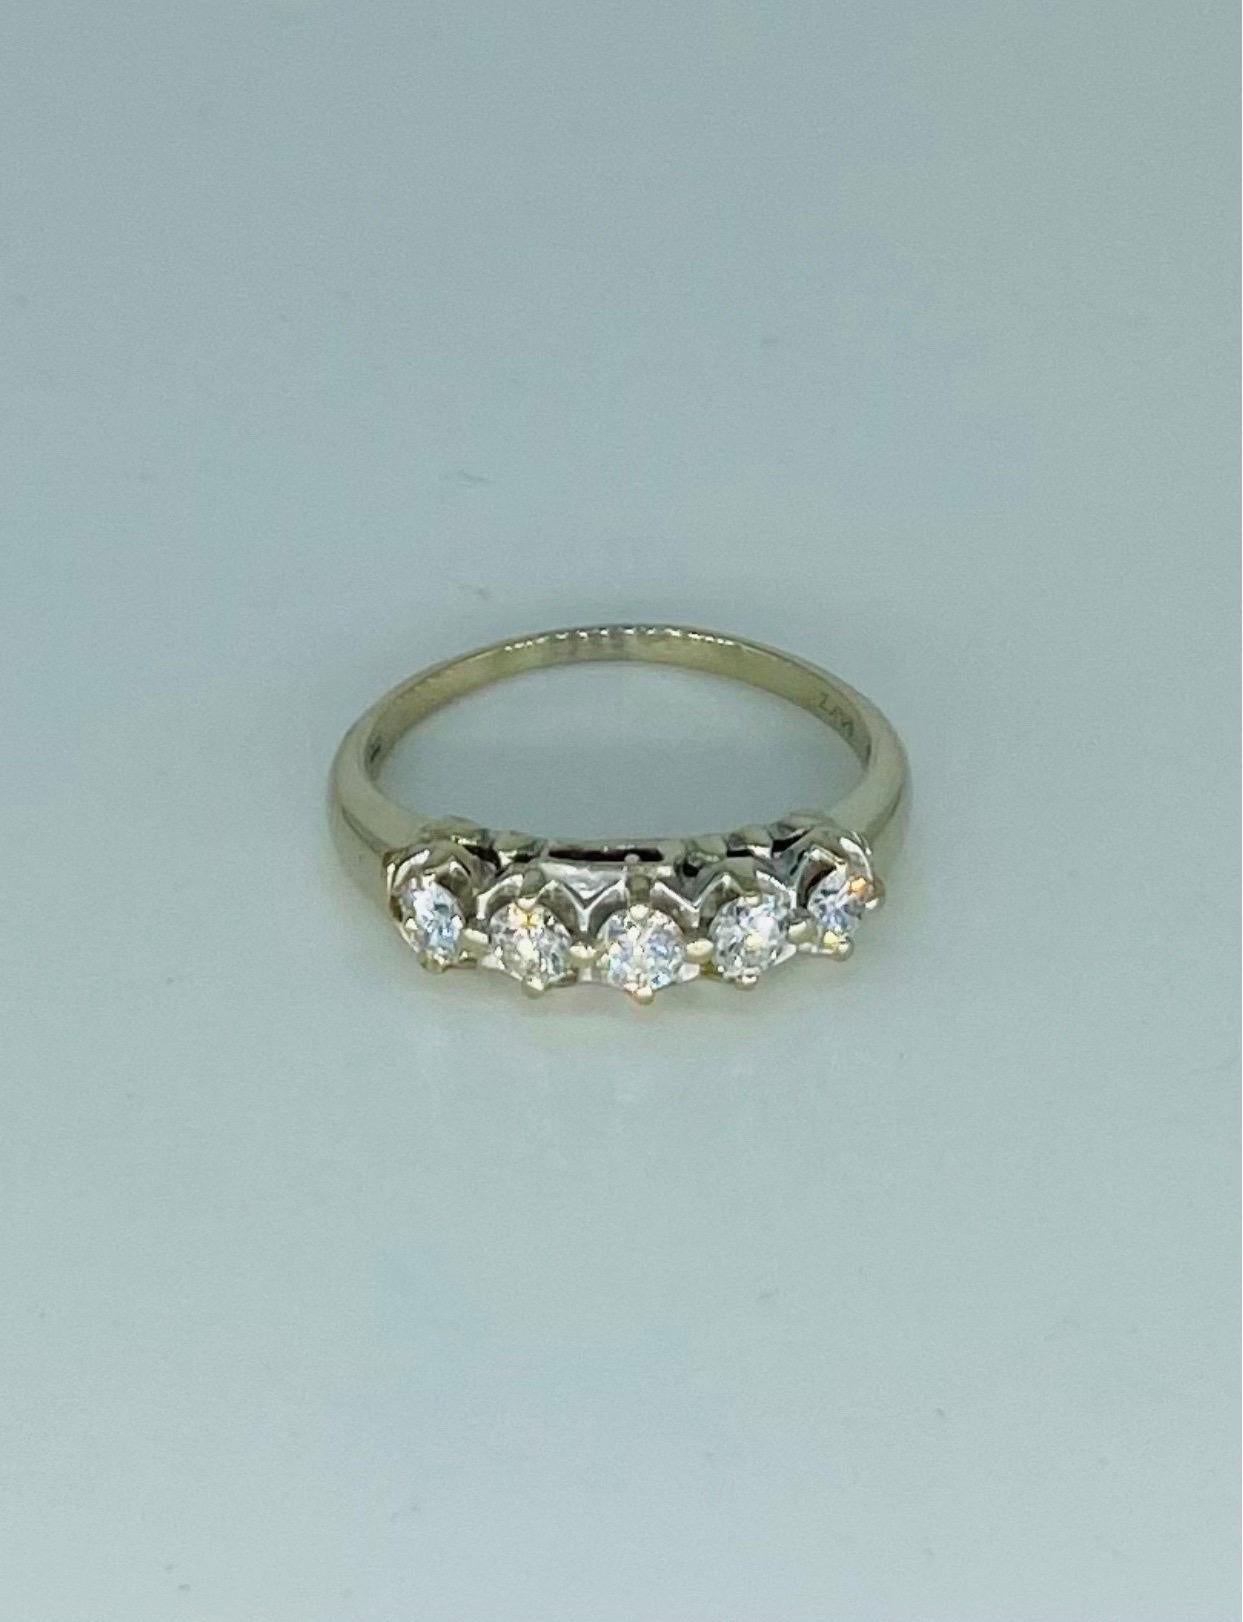 Vintage 0.60 Carat Four-Stone Half Eternity Ring 14k White Gold. La bague présentée ici comprend 4 diamants pour un total d'environ 0,60 carat. Magnifiquement assemblés, les diamants sont de très haute qualité et de grande clarté. La bague est une